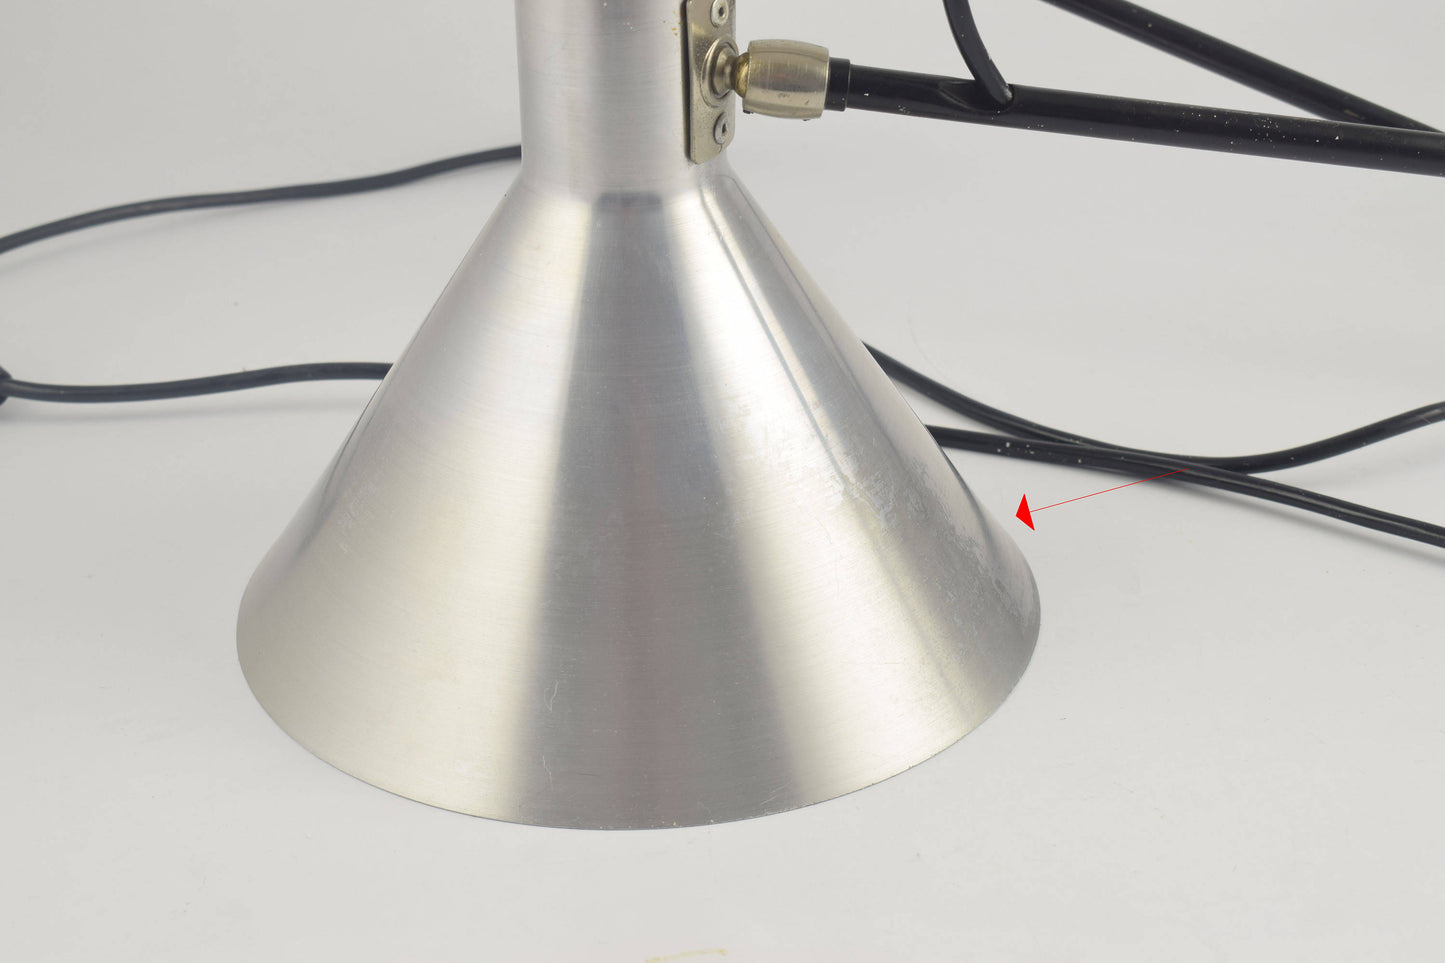 Anvia hoogervorst lámpara de pared con codo de aluminio cromado, Anvia 748-08 Lámpara de brazo ajustable color plata